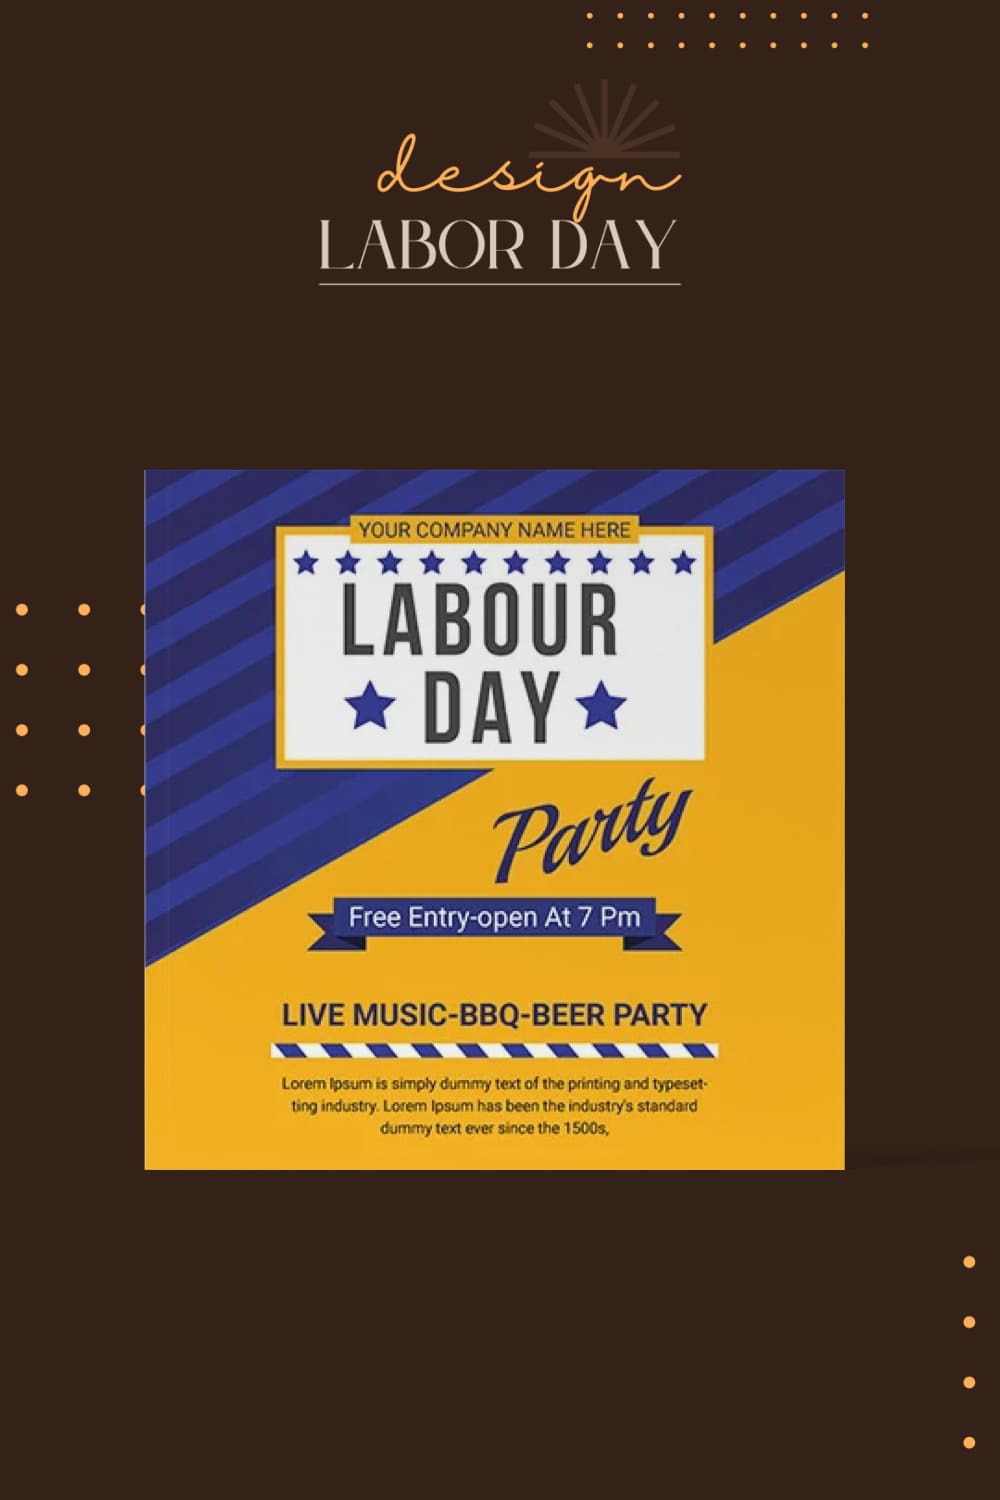 Social Media Web Banner Design Labor Day - Pinterest.